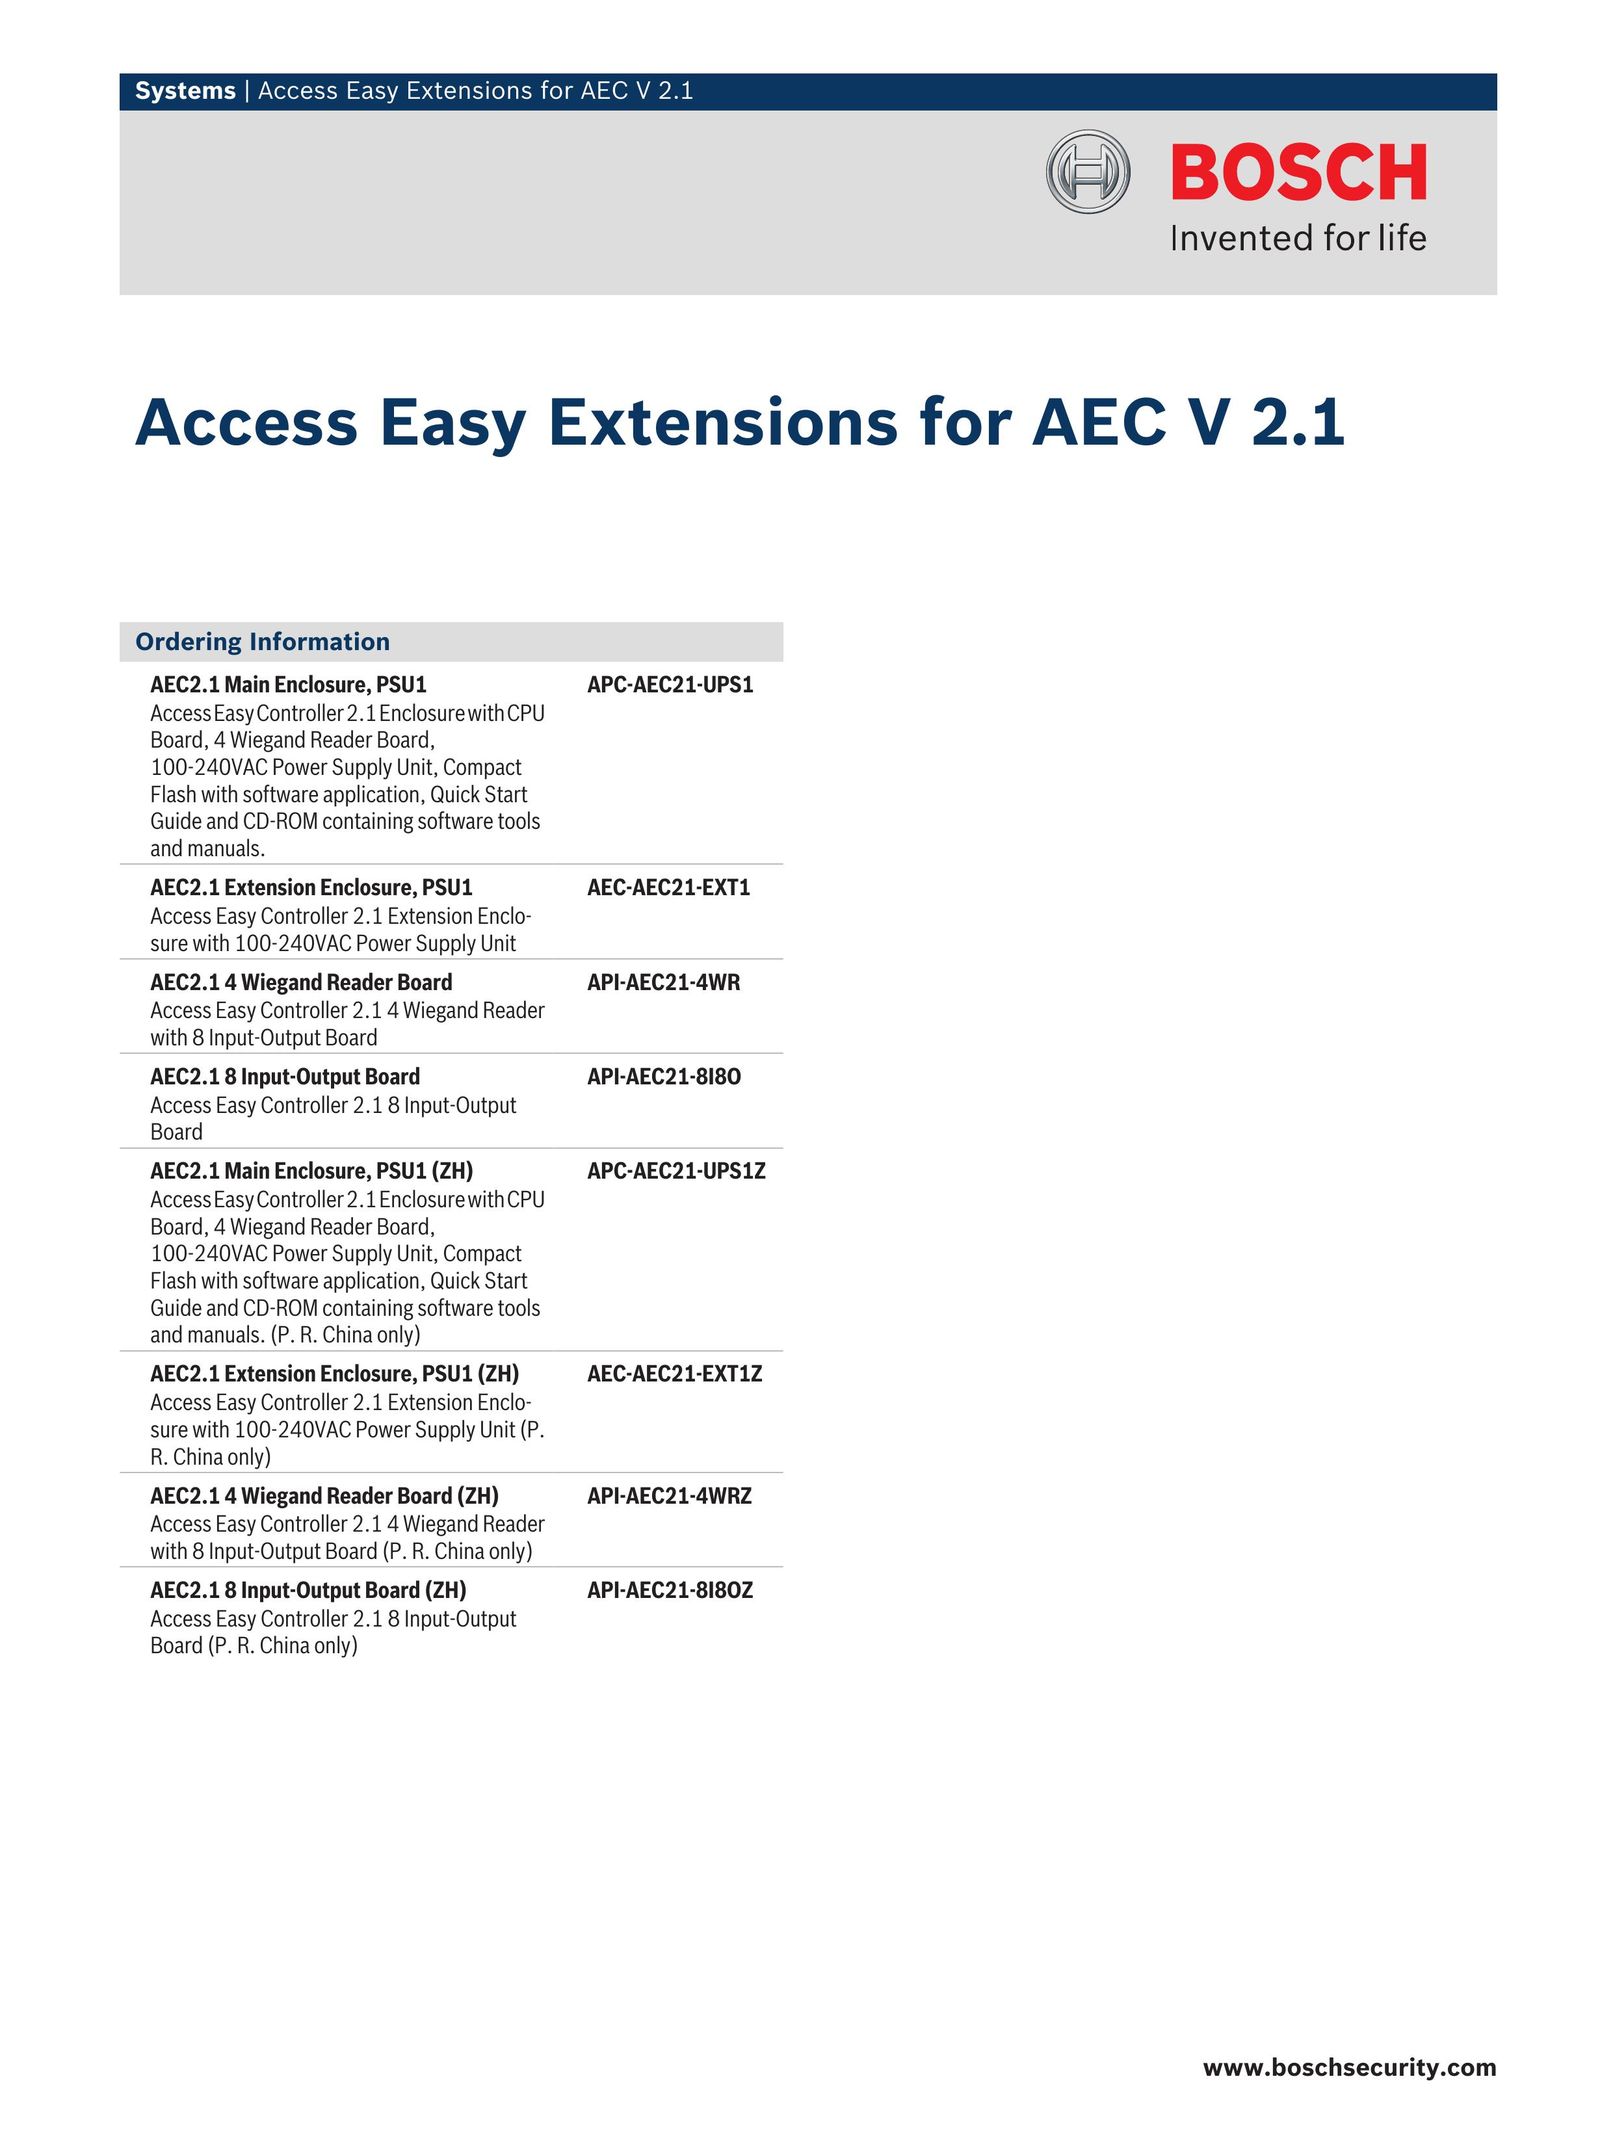 Bosch Appliances API-AEC21-4WRZ Home Security System User Manual